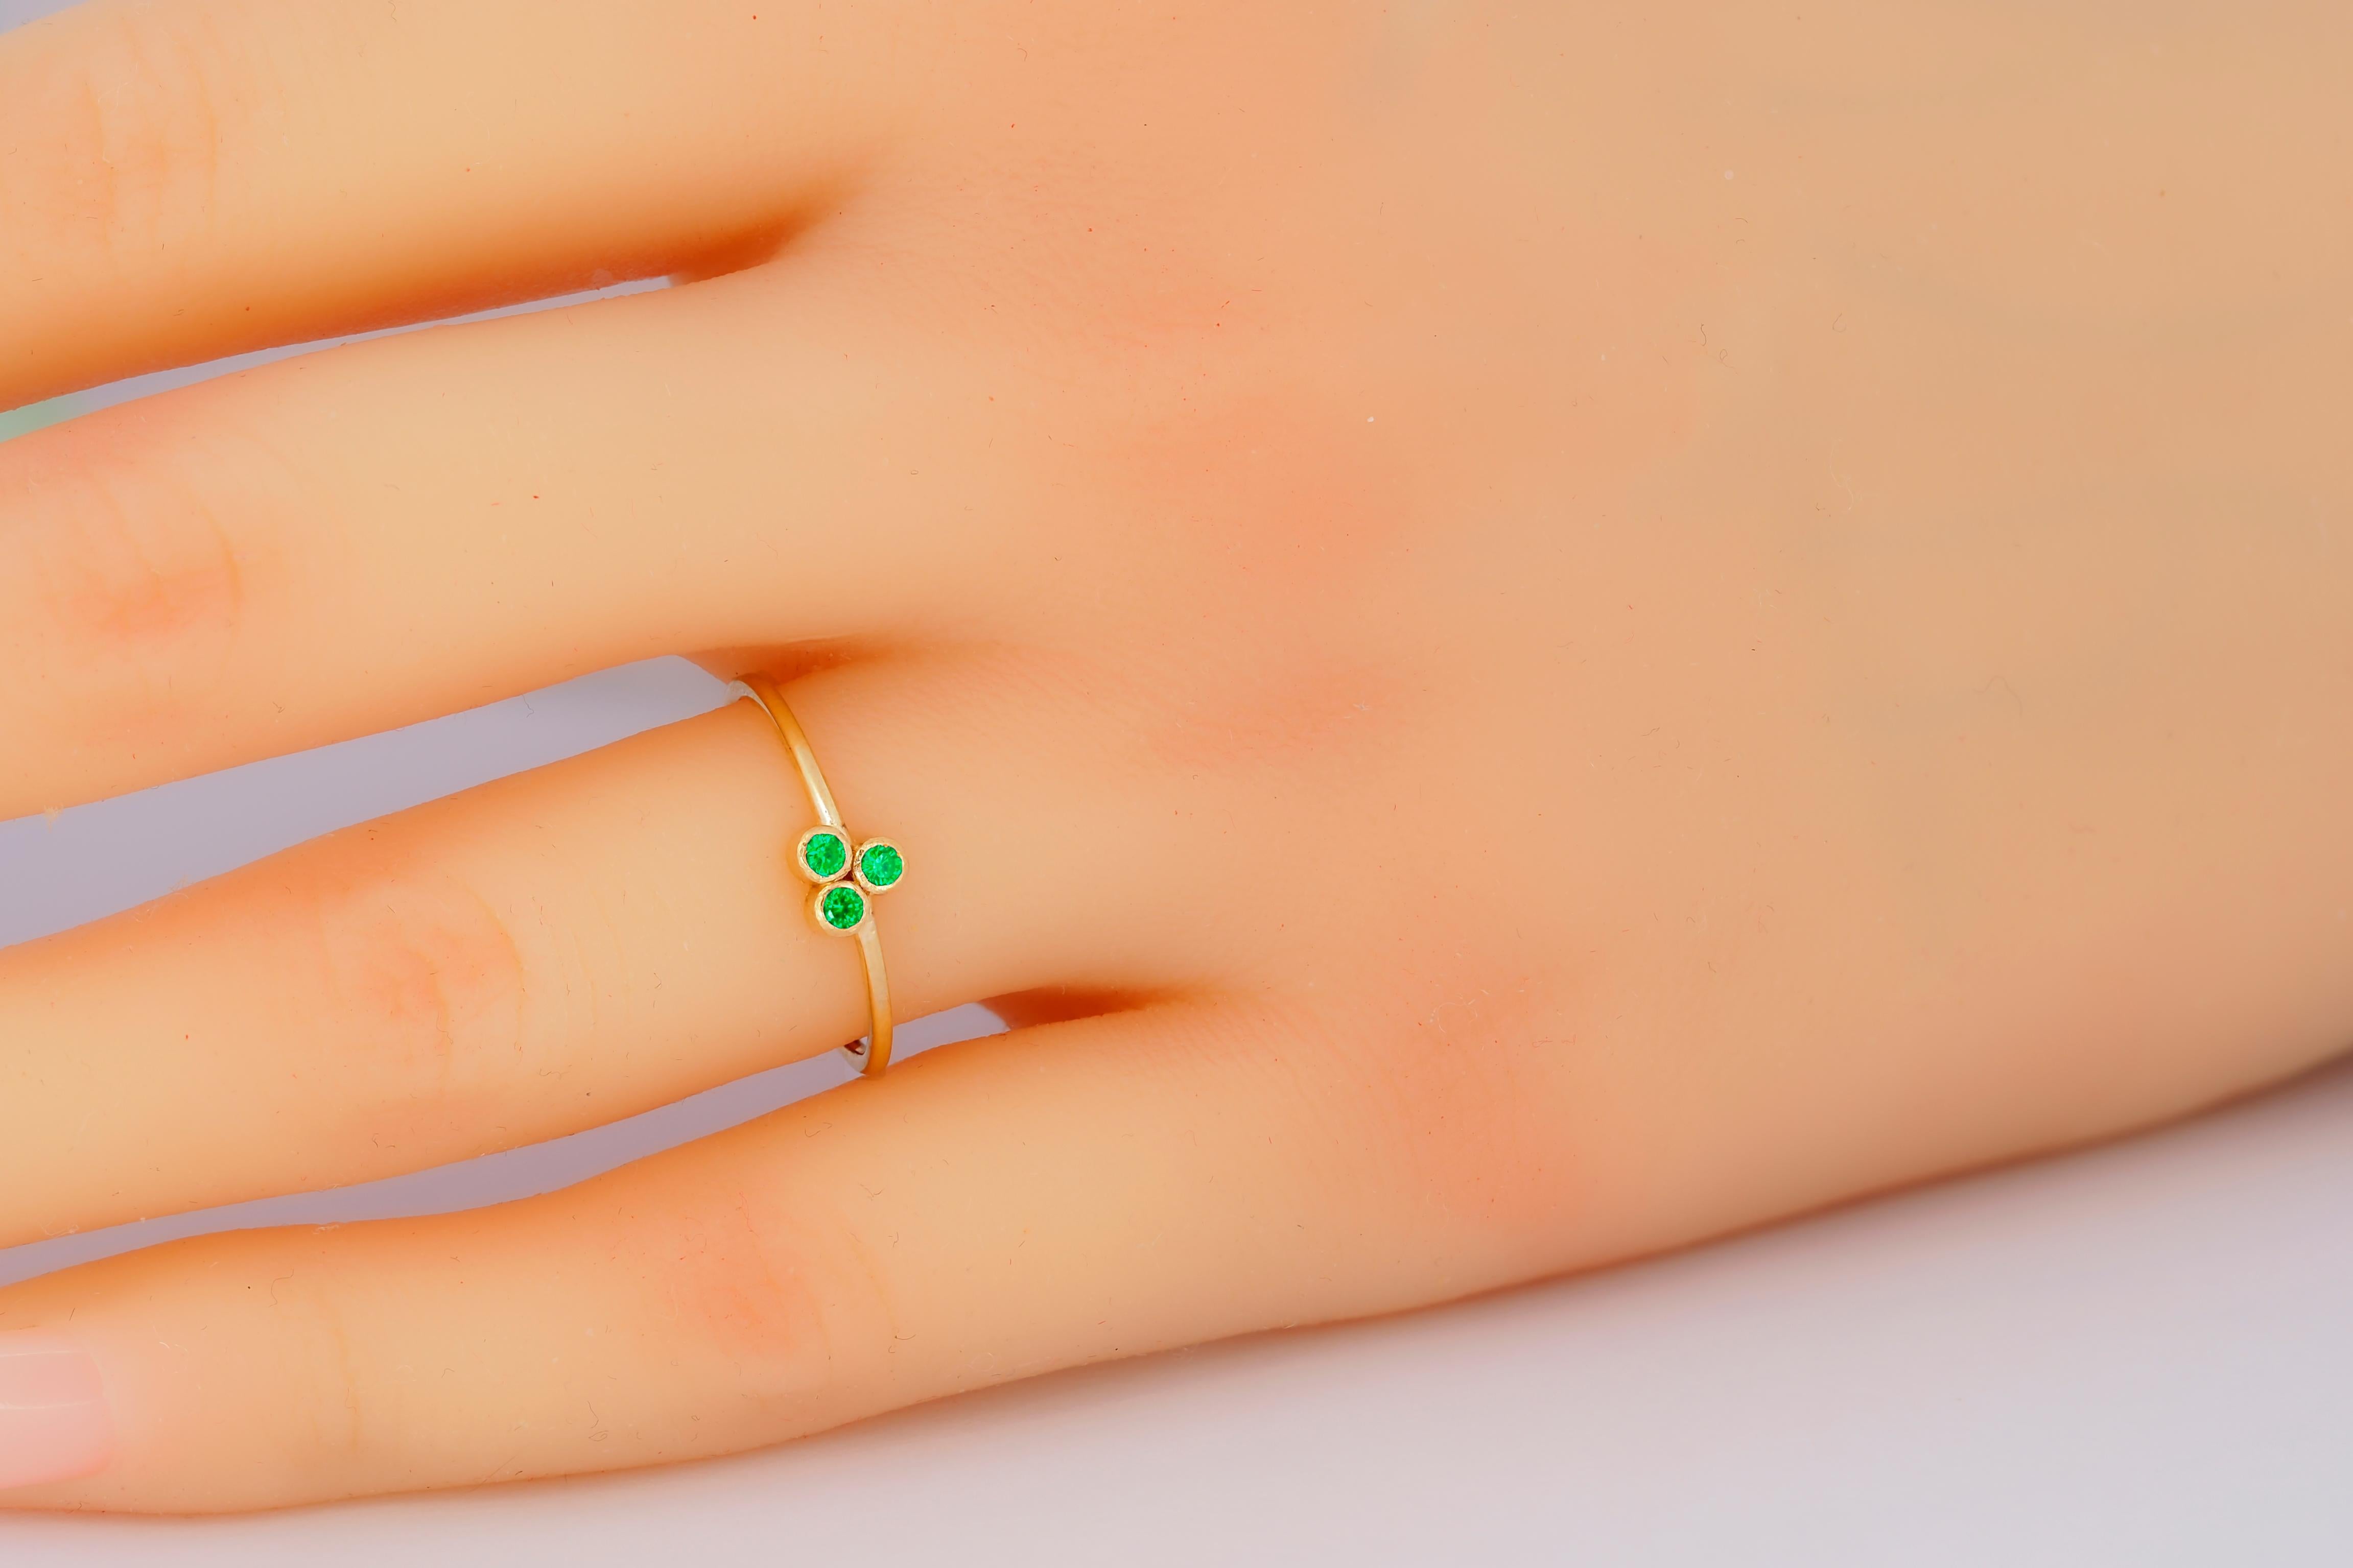 Grüner Dreistein-Ring aus 14 Karat Gold.  Ring mit drei Steinen. Minimalistischer Ring mit grünem Laborsmaragd. Zierlicher Edelstein-Ring. Dünner Bandring. Stapelbarer Bandring.

Metall: 14k Gold
Gewicht: 1.8 g je nach Größe
Laborsmaragd, 3 Steine,